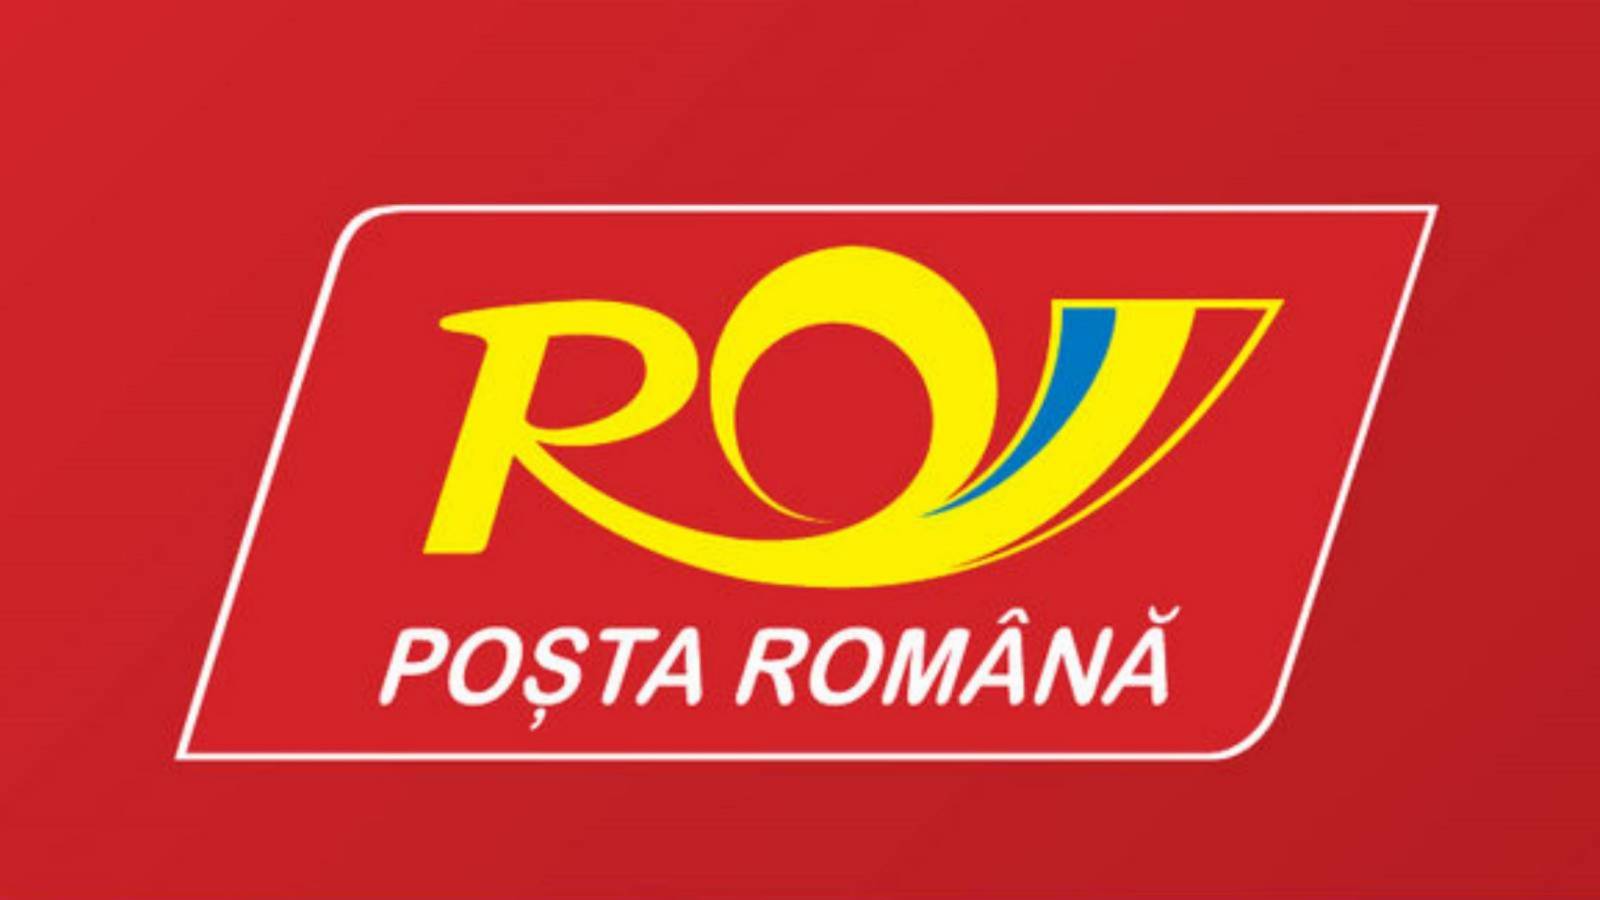 annoncering af den rumænske posttjeneste ems